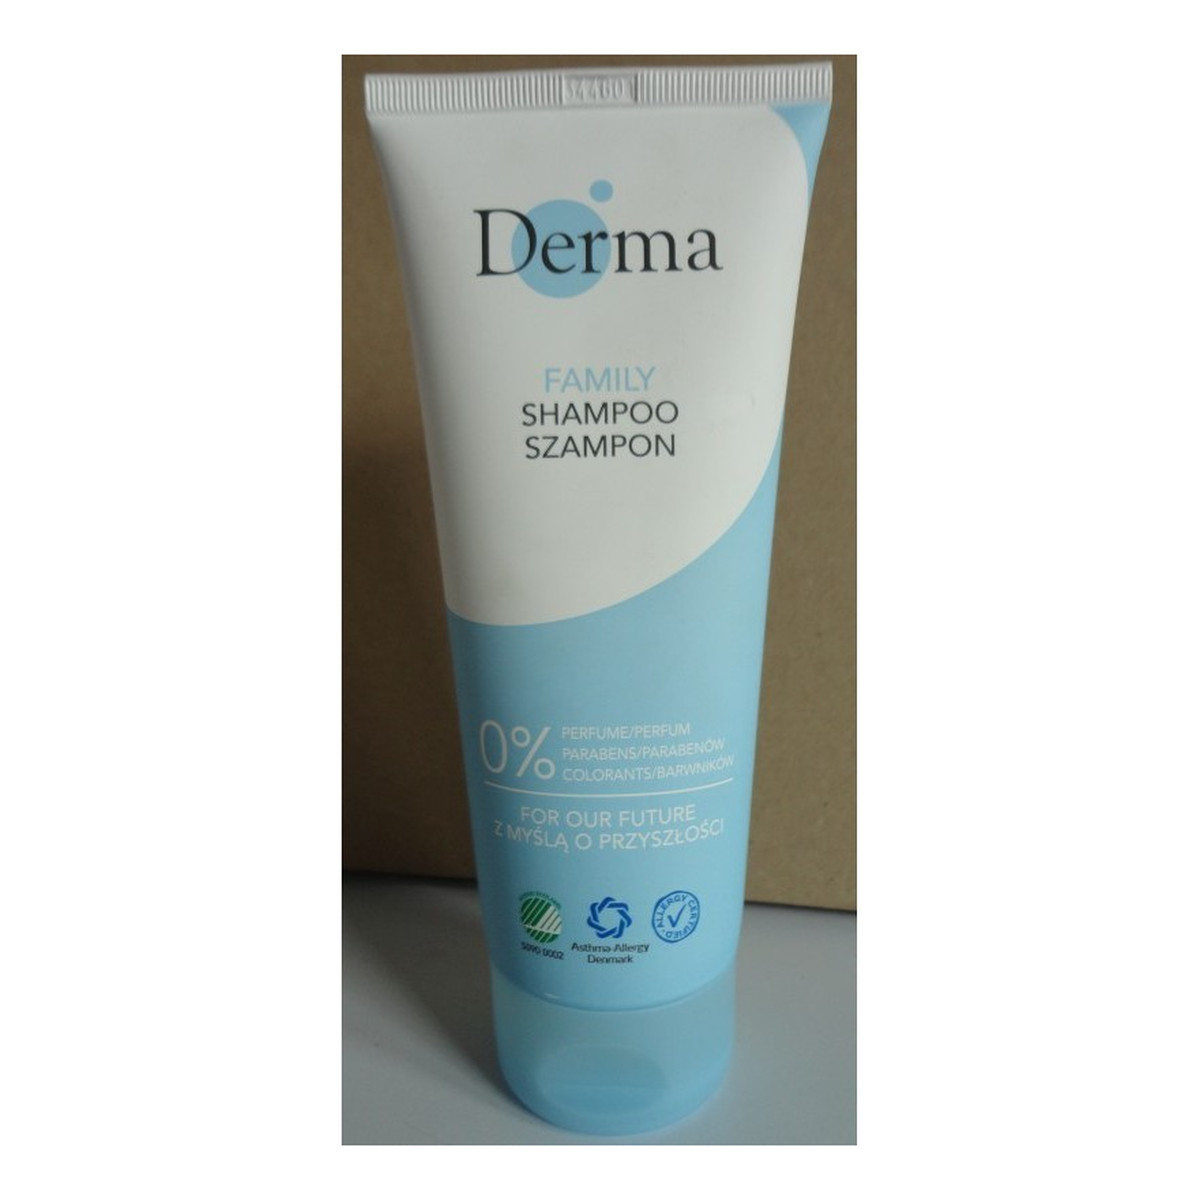 Derma Family Łagodny szampon do włosów 200ml